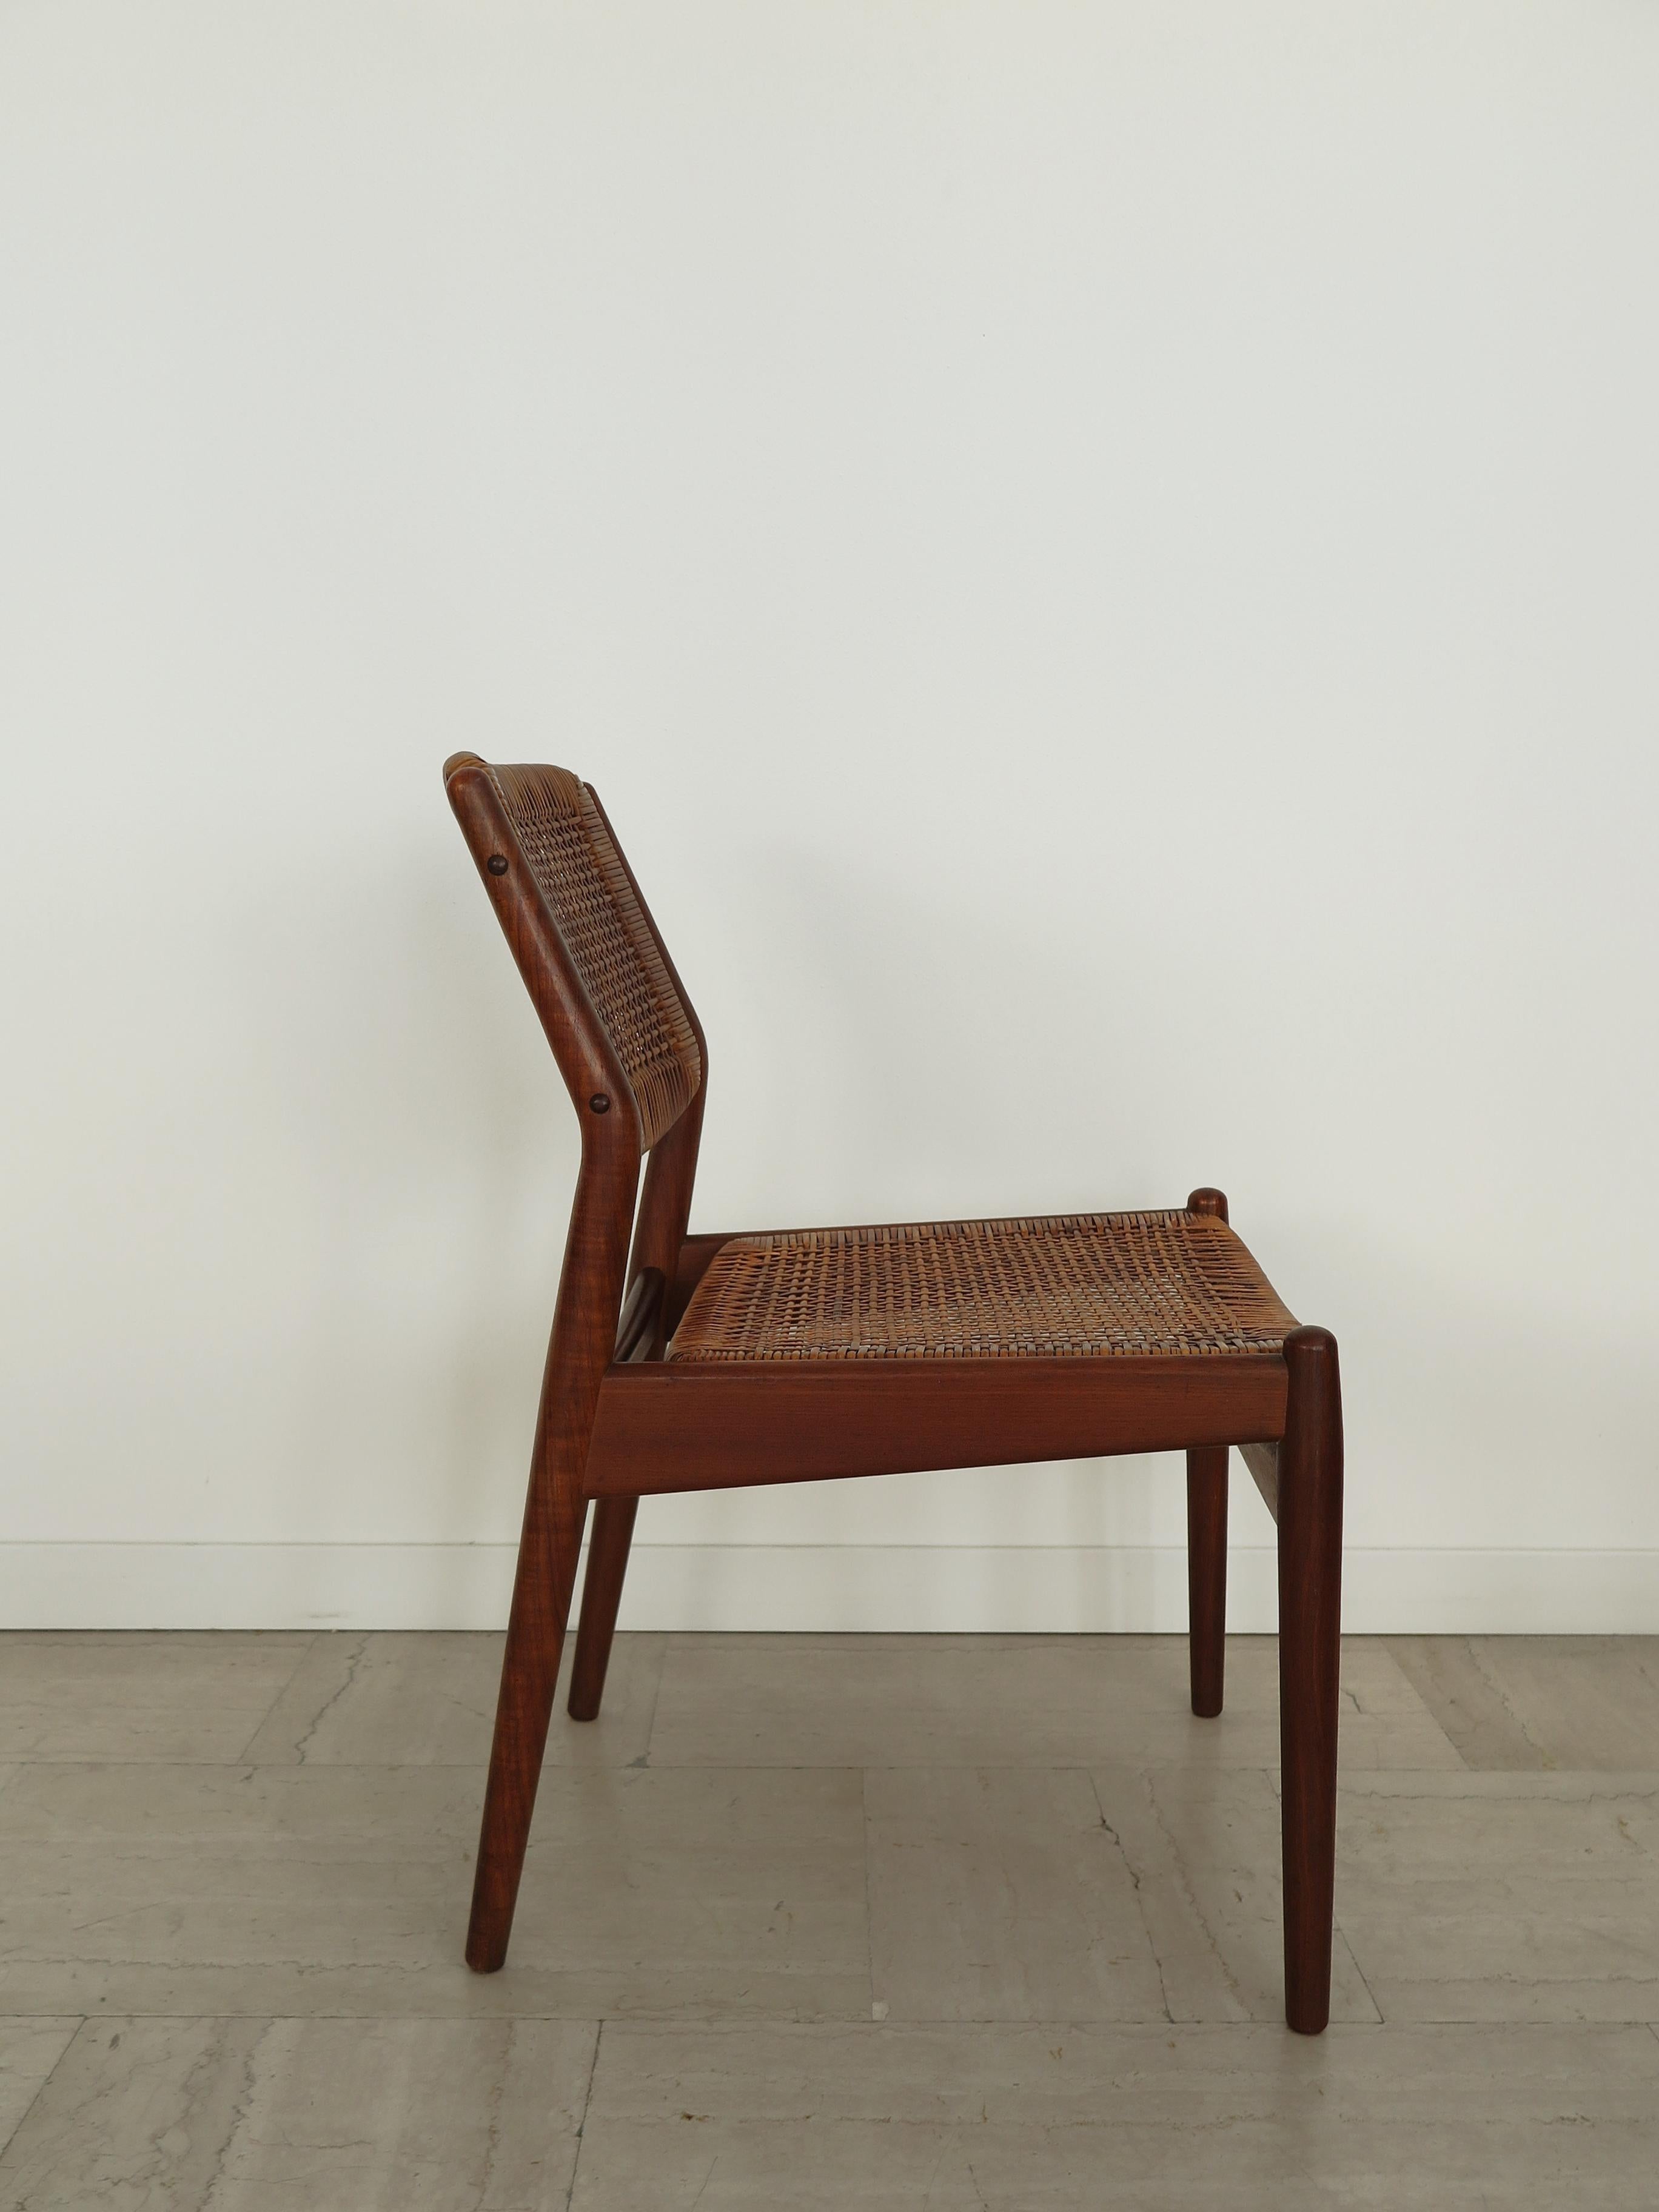 Arne Vodder Midcentury Scandinavian Teak Rattan Chairs for Sibast 1950s For Sale 1